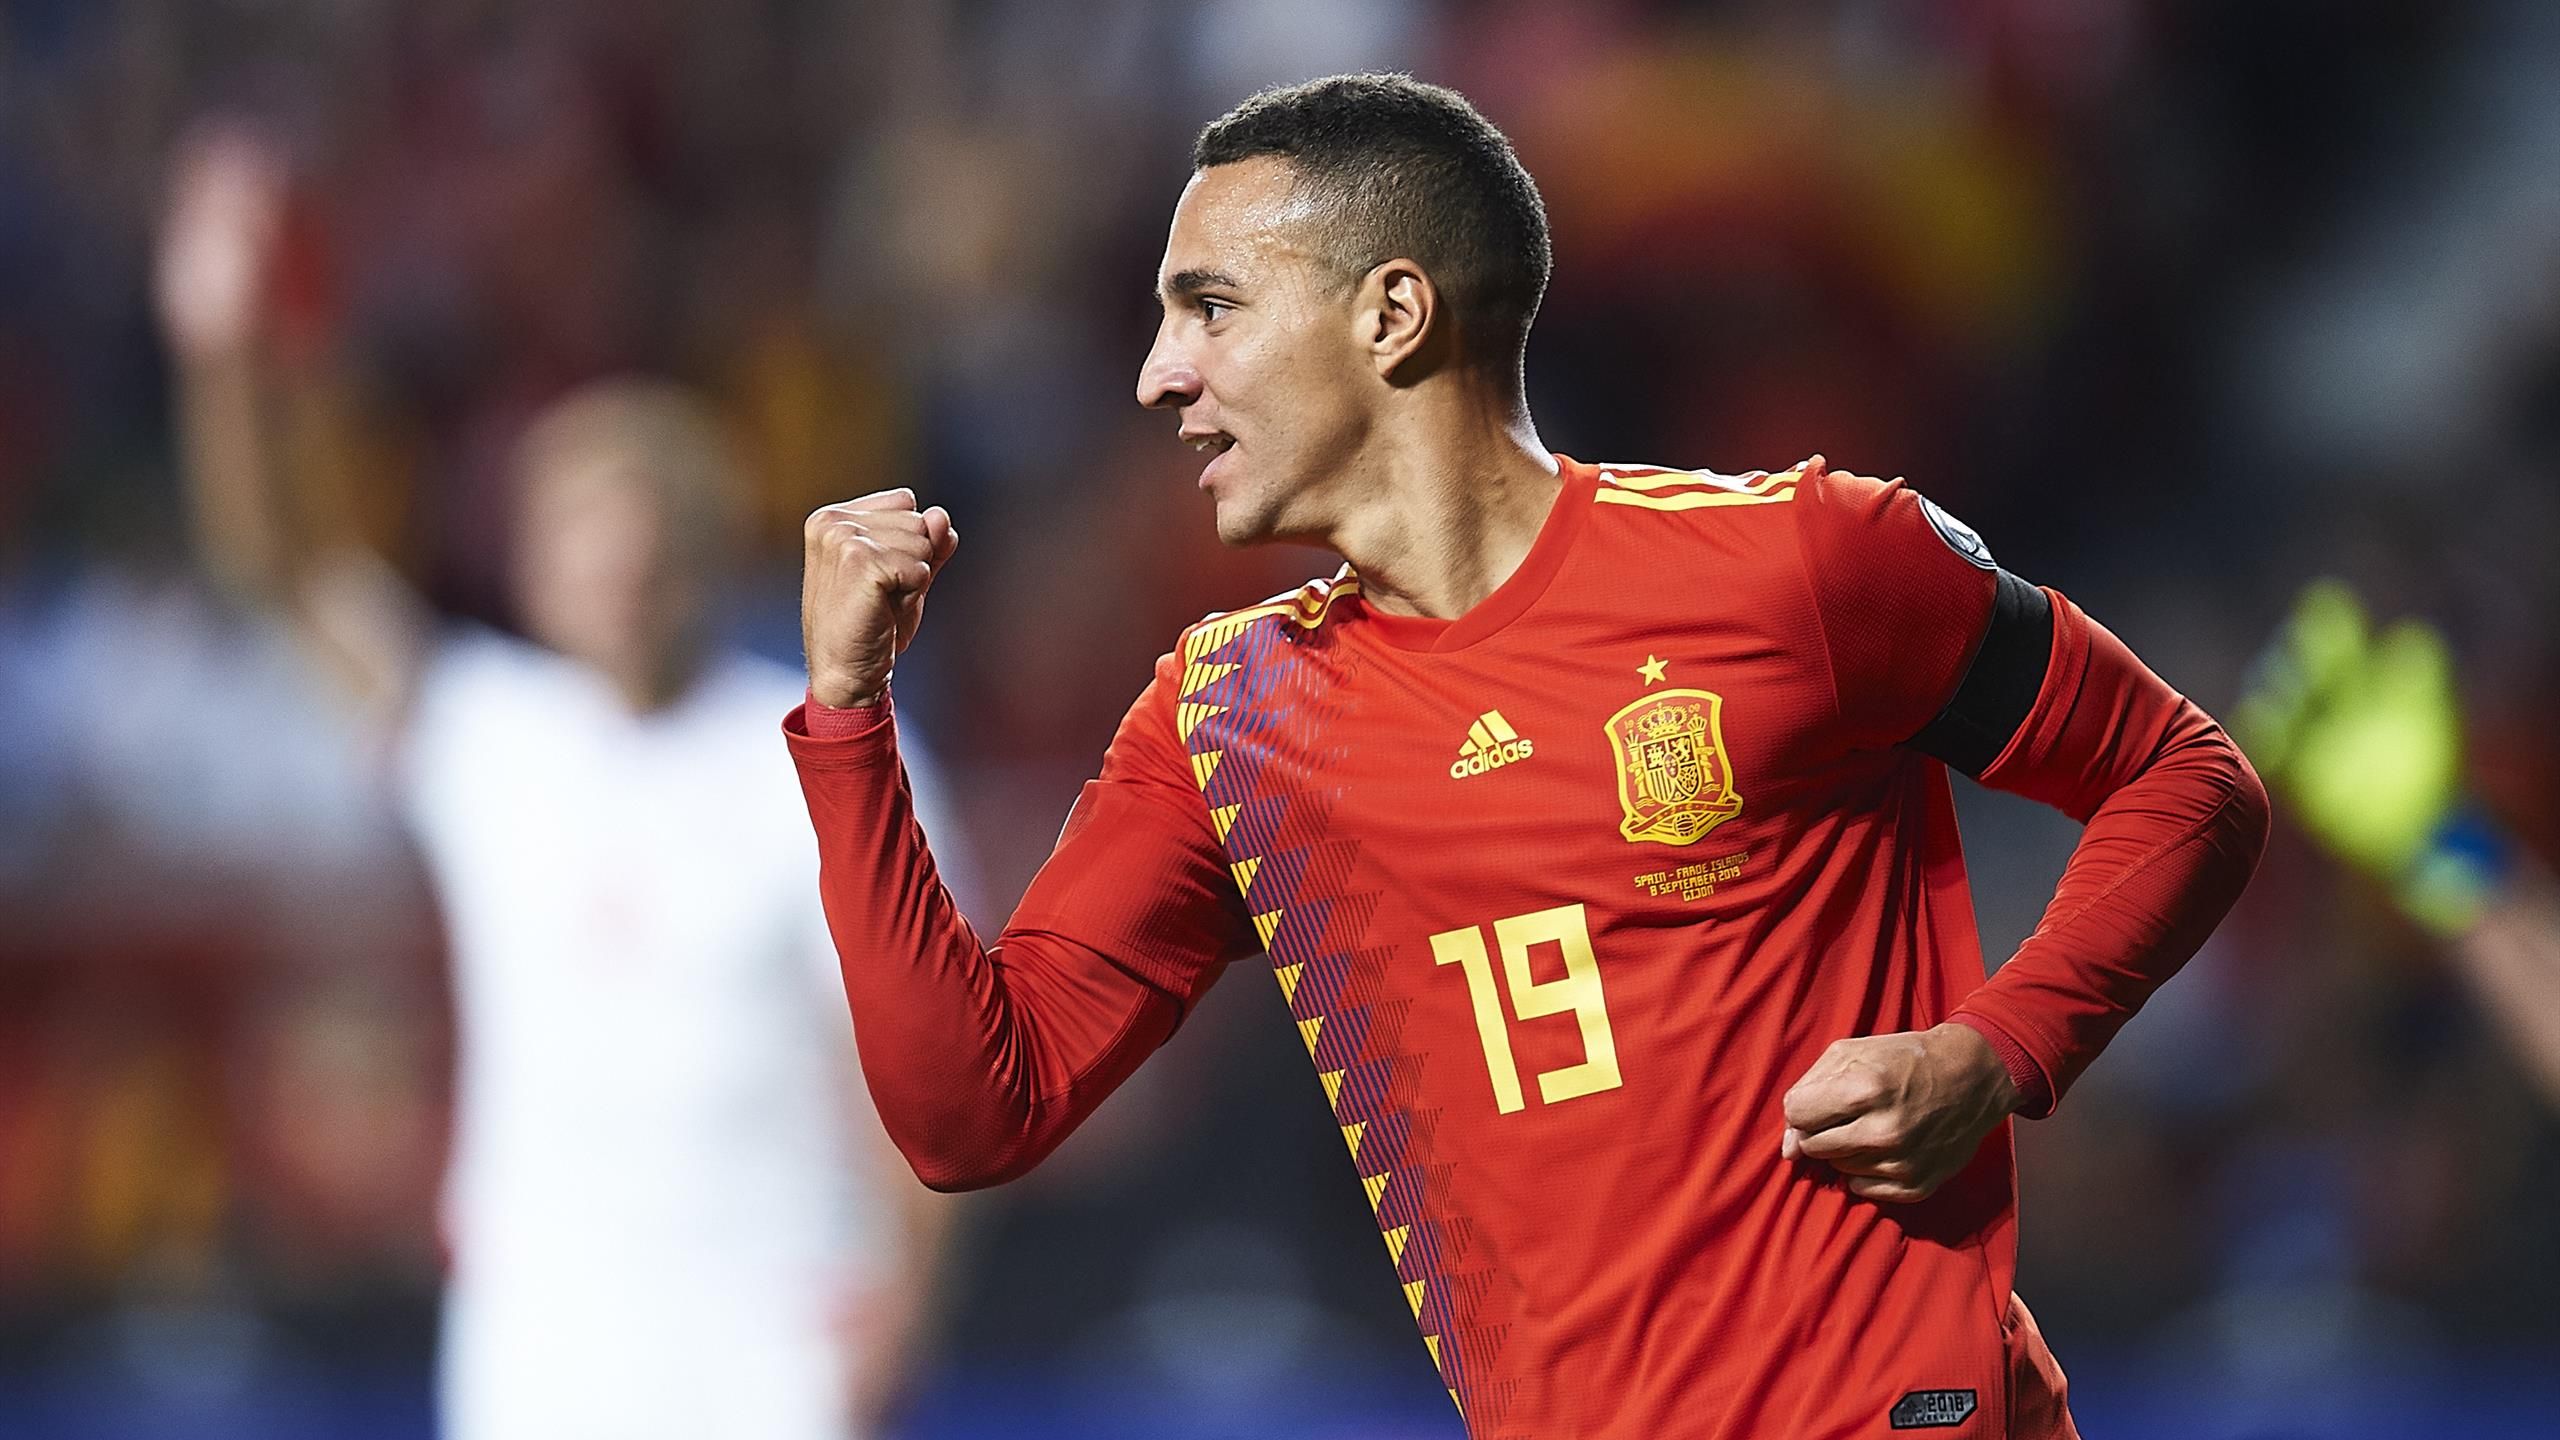 Rodrigo Moreno guía a España hacia la Eurocopa 2020 con gol en el minuto 91 - Eurosport